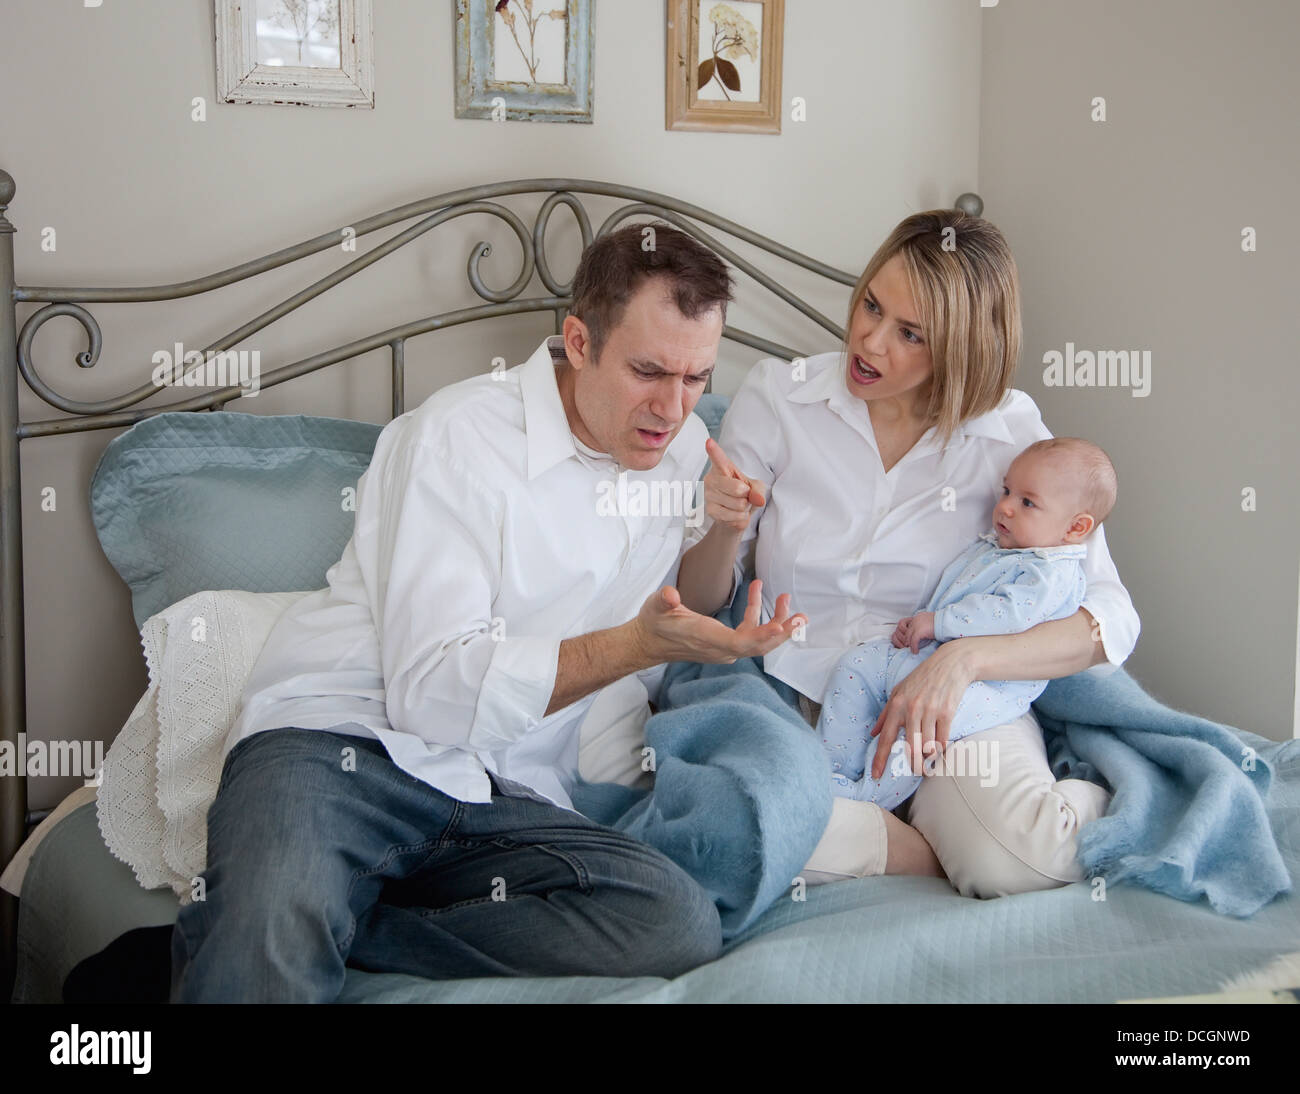 Parents Argue While Holding A Baby; Jordan, Ontario, Canada Stock Photo